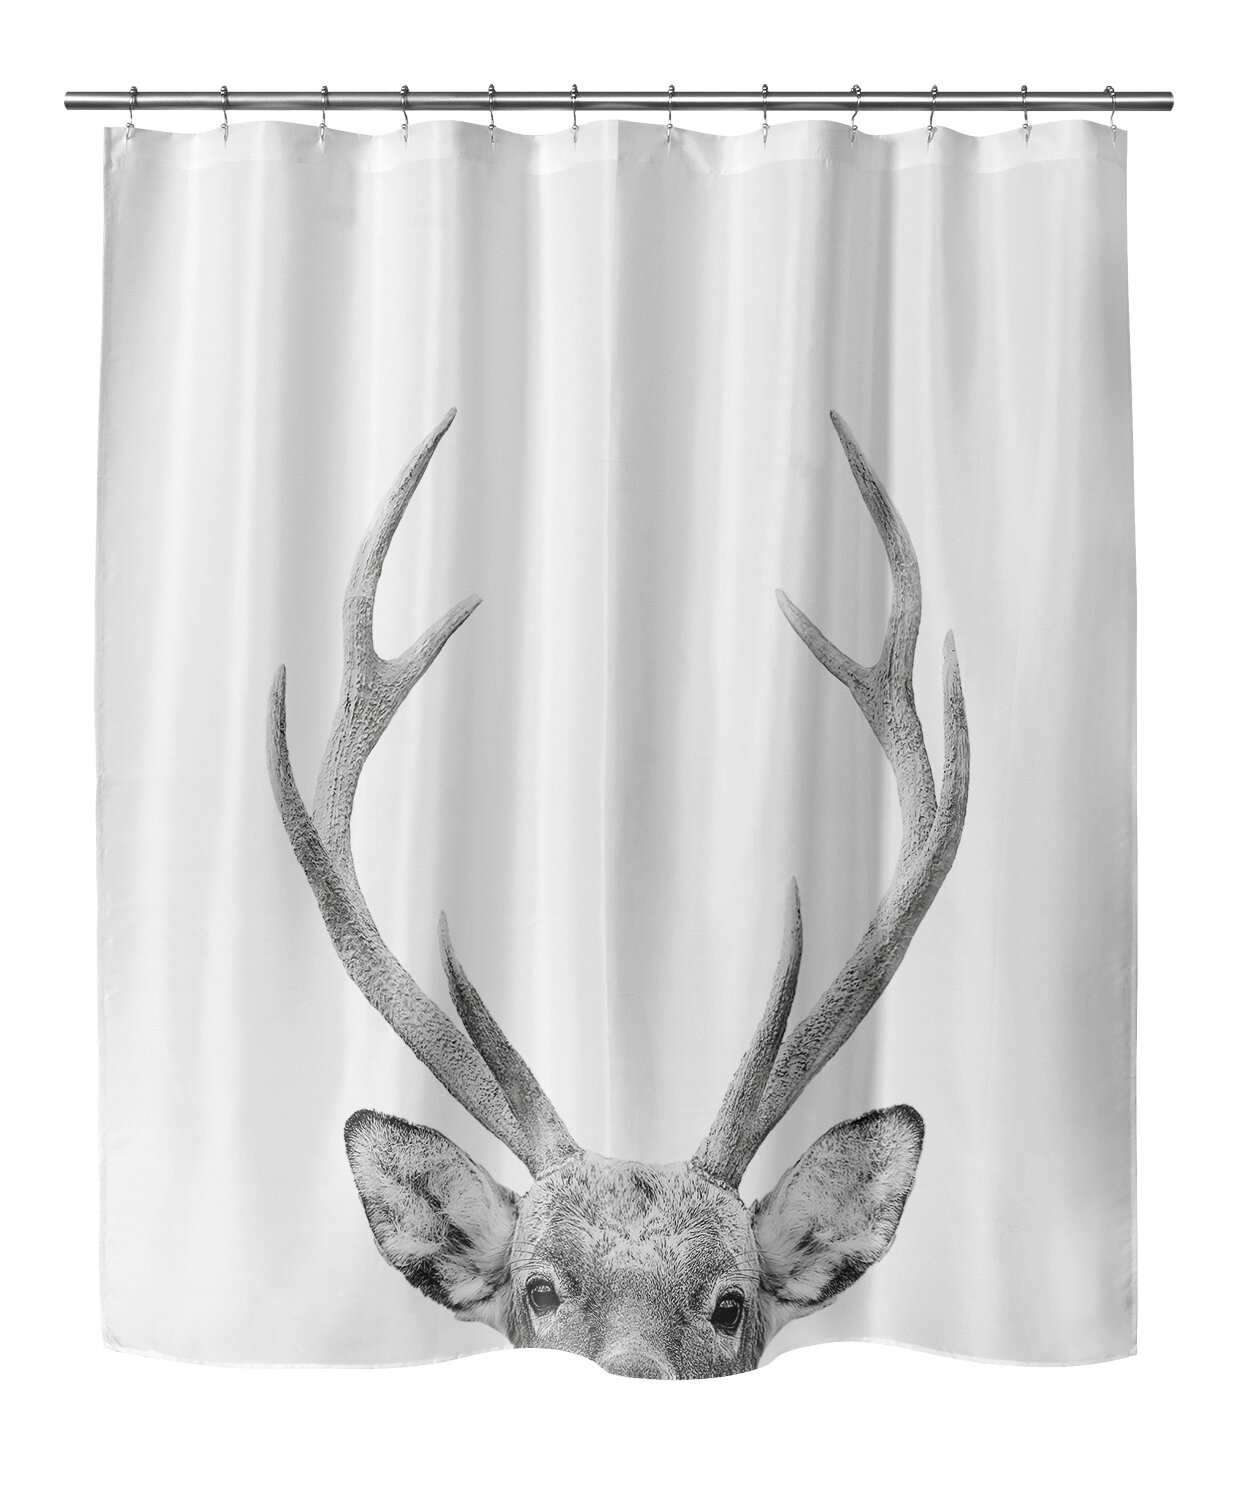 deer shower curtain hooks